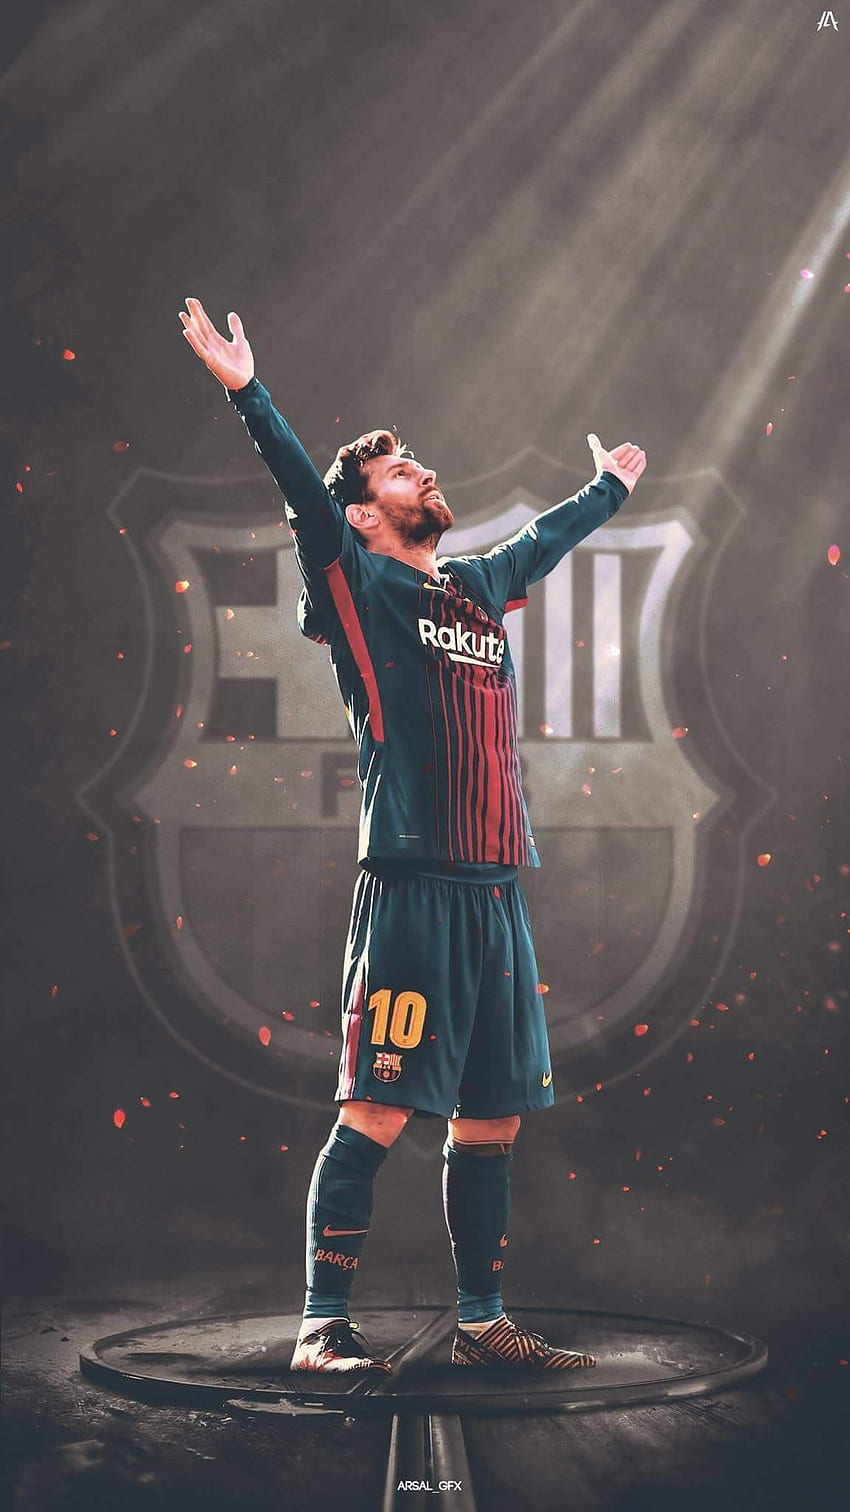 Messi HD phone wallpaper